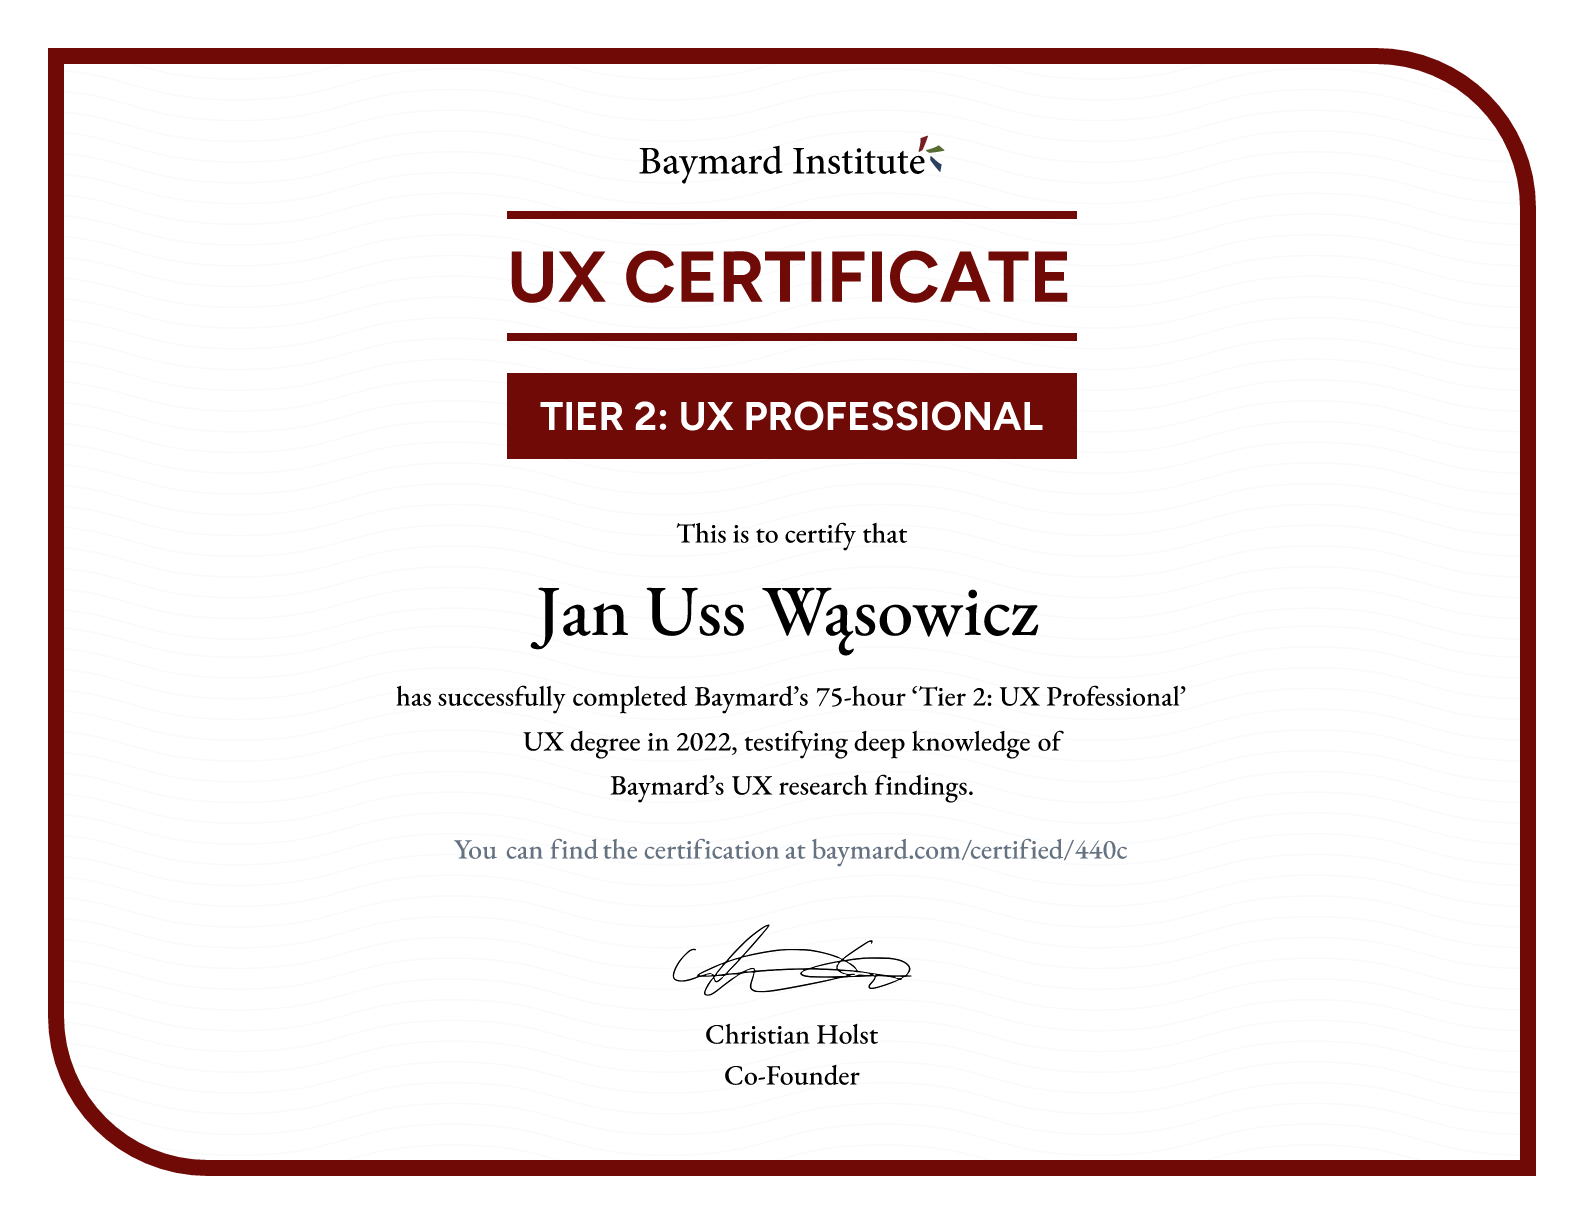 Jan Uss Wąsowicz’s certificate